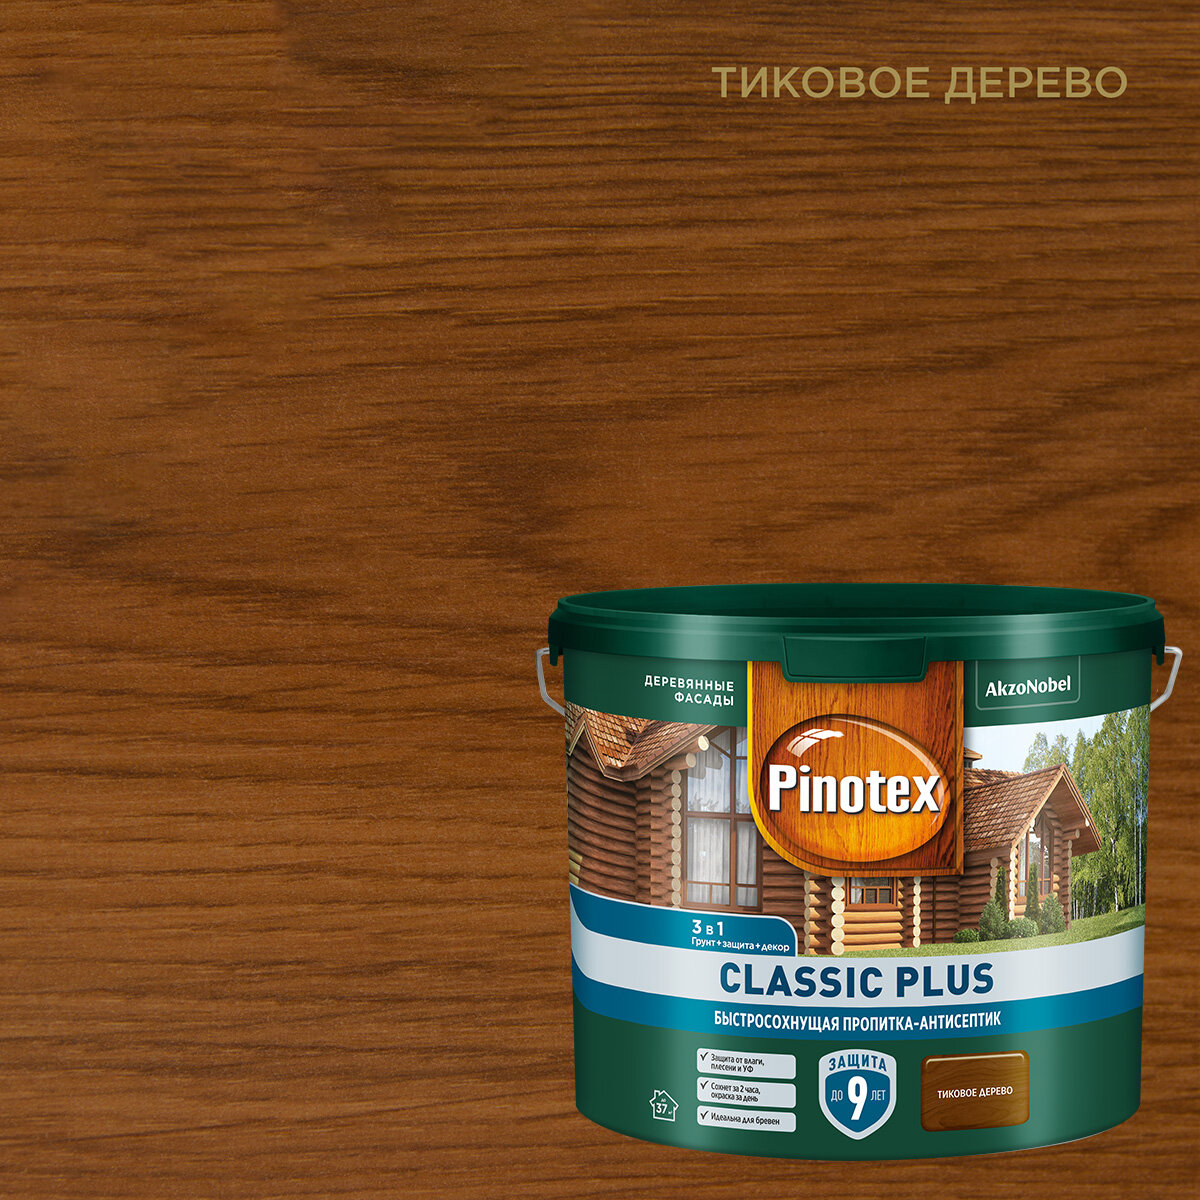 Водозащитная пропитка Pinotex Classic Plus, 2.5 л, тиковое дерево